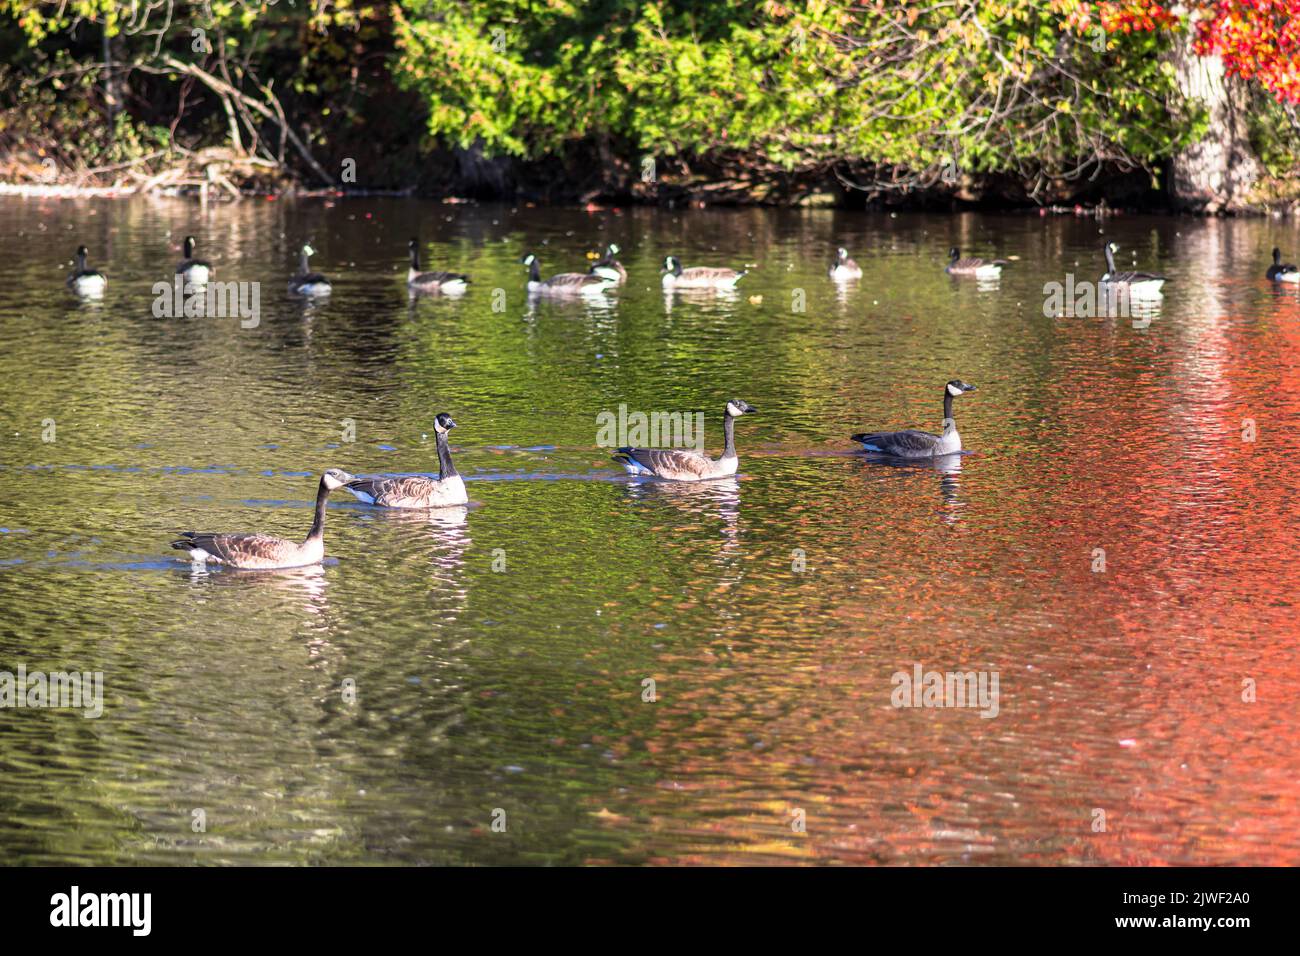 Grand groupe d'oies du Canada sur un étang. Paysage d'automne avec arbres colorés reflet sur l'eau. Banque D'Images